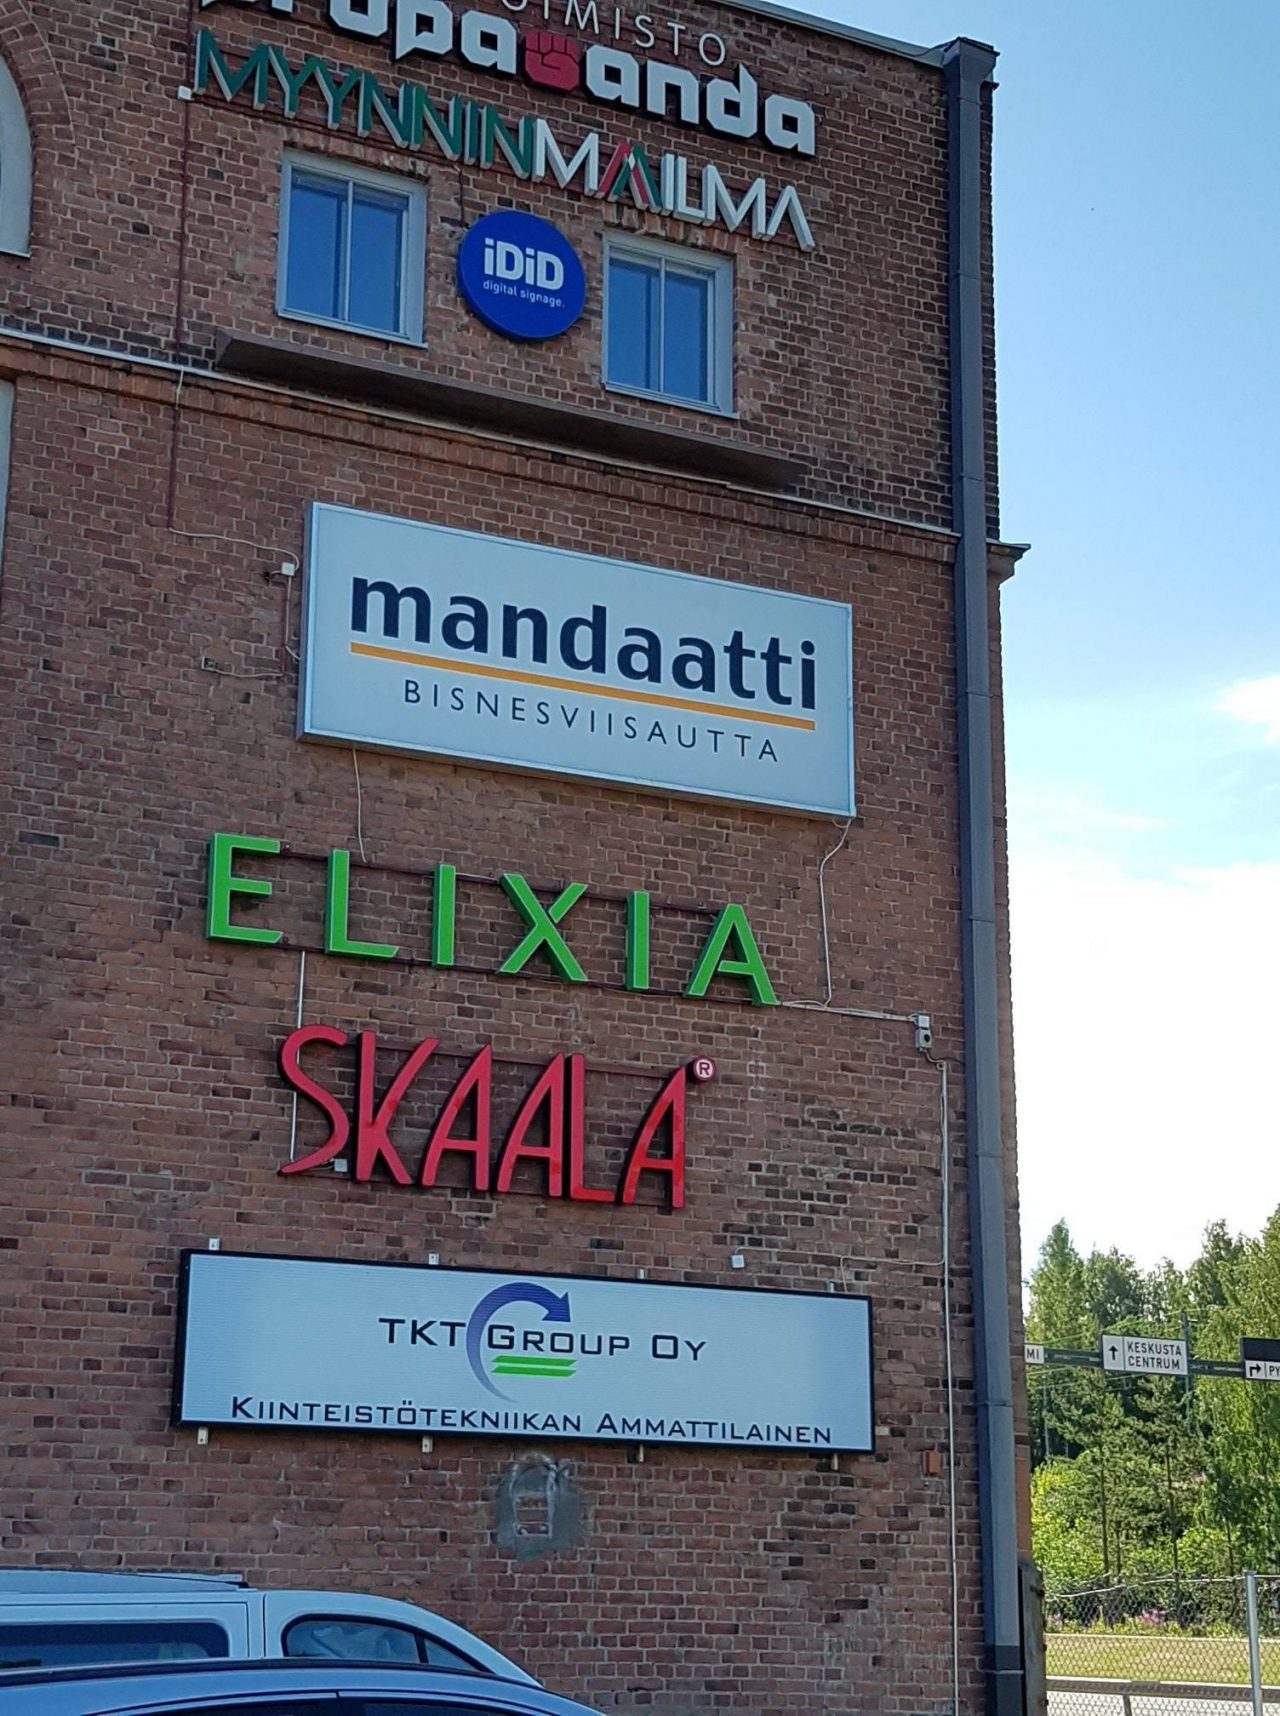 Tilitoimisto Mandaatti Tampere on keskeisellä paikalla Näsinneulan katveessa.